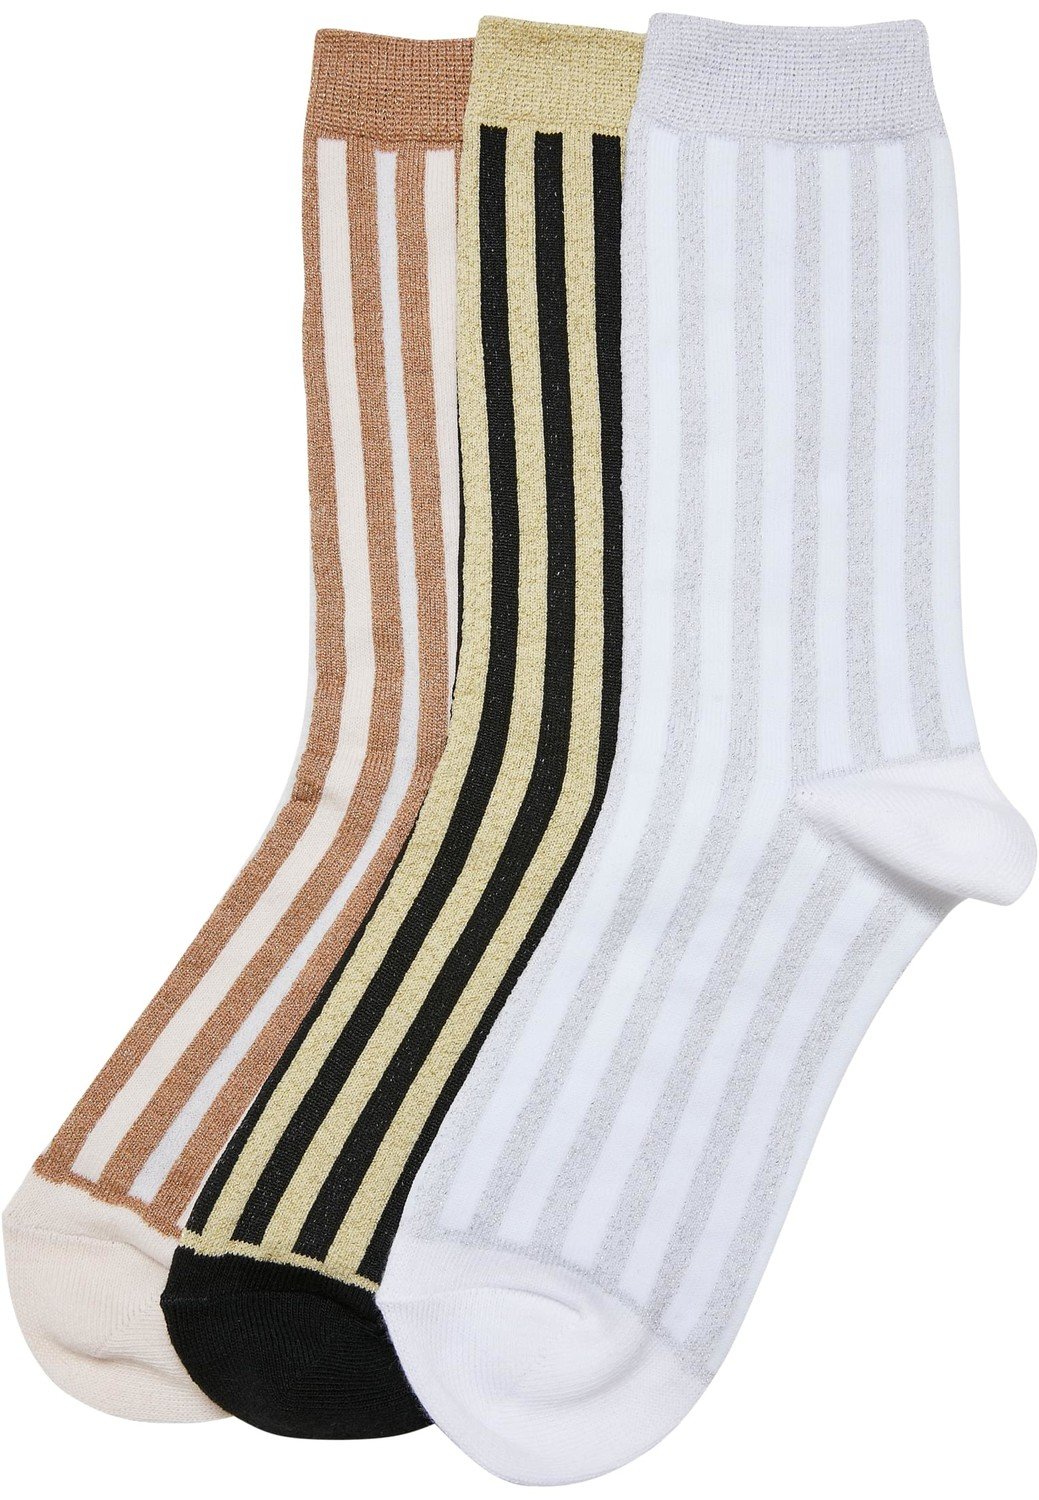 Metallic Effect Stripe Socks 3-Pack black/whitesand/white